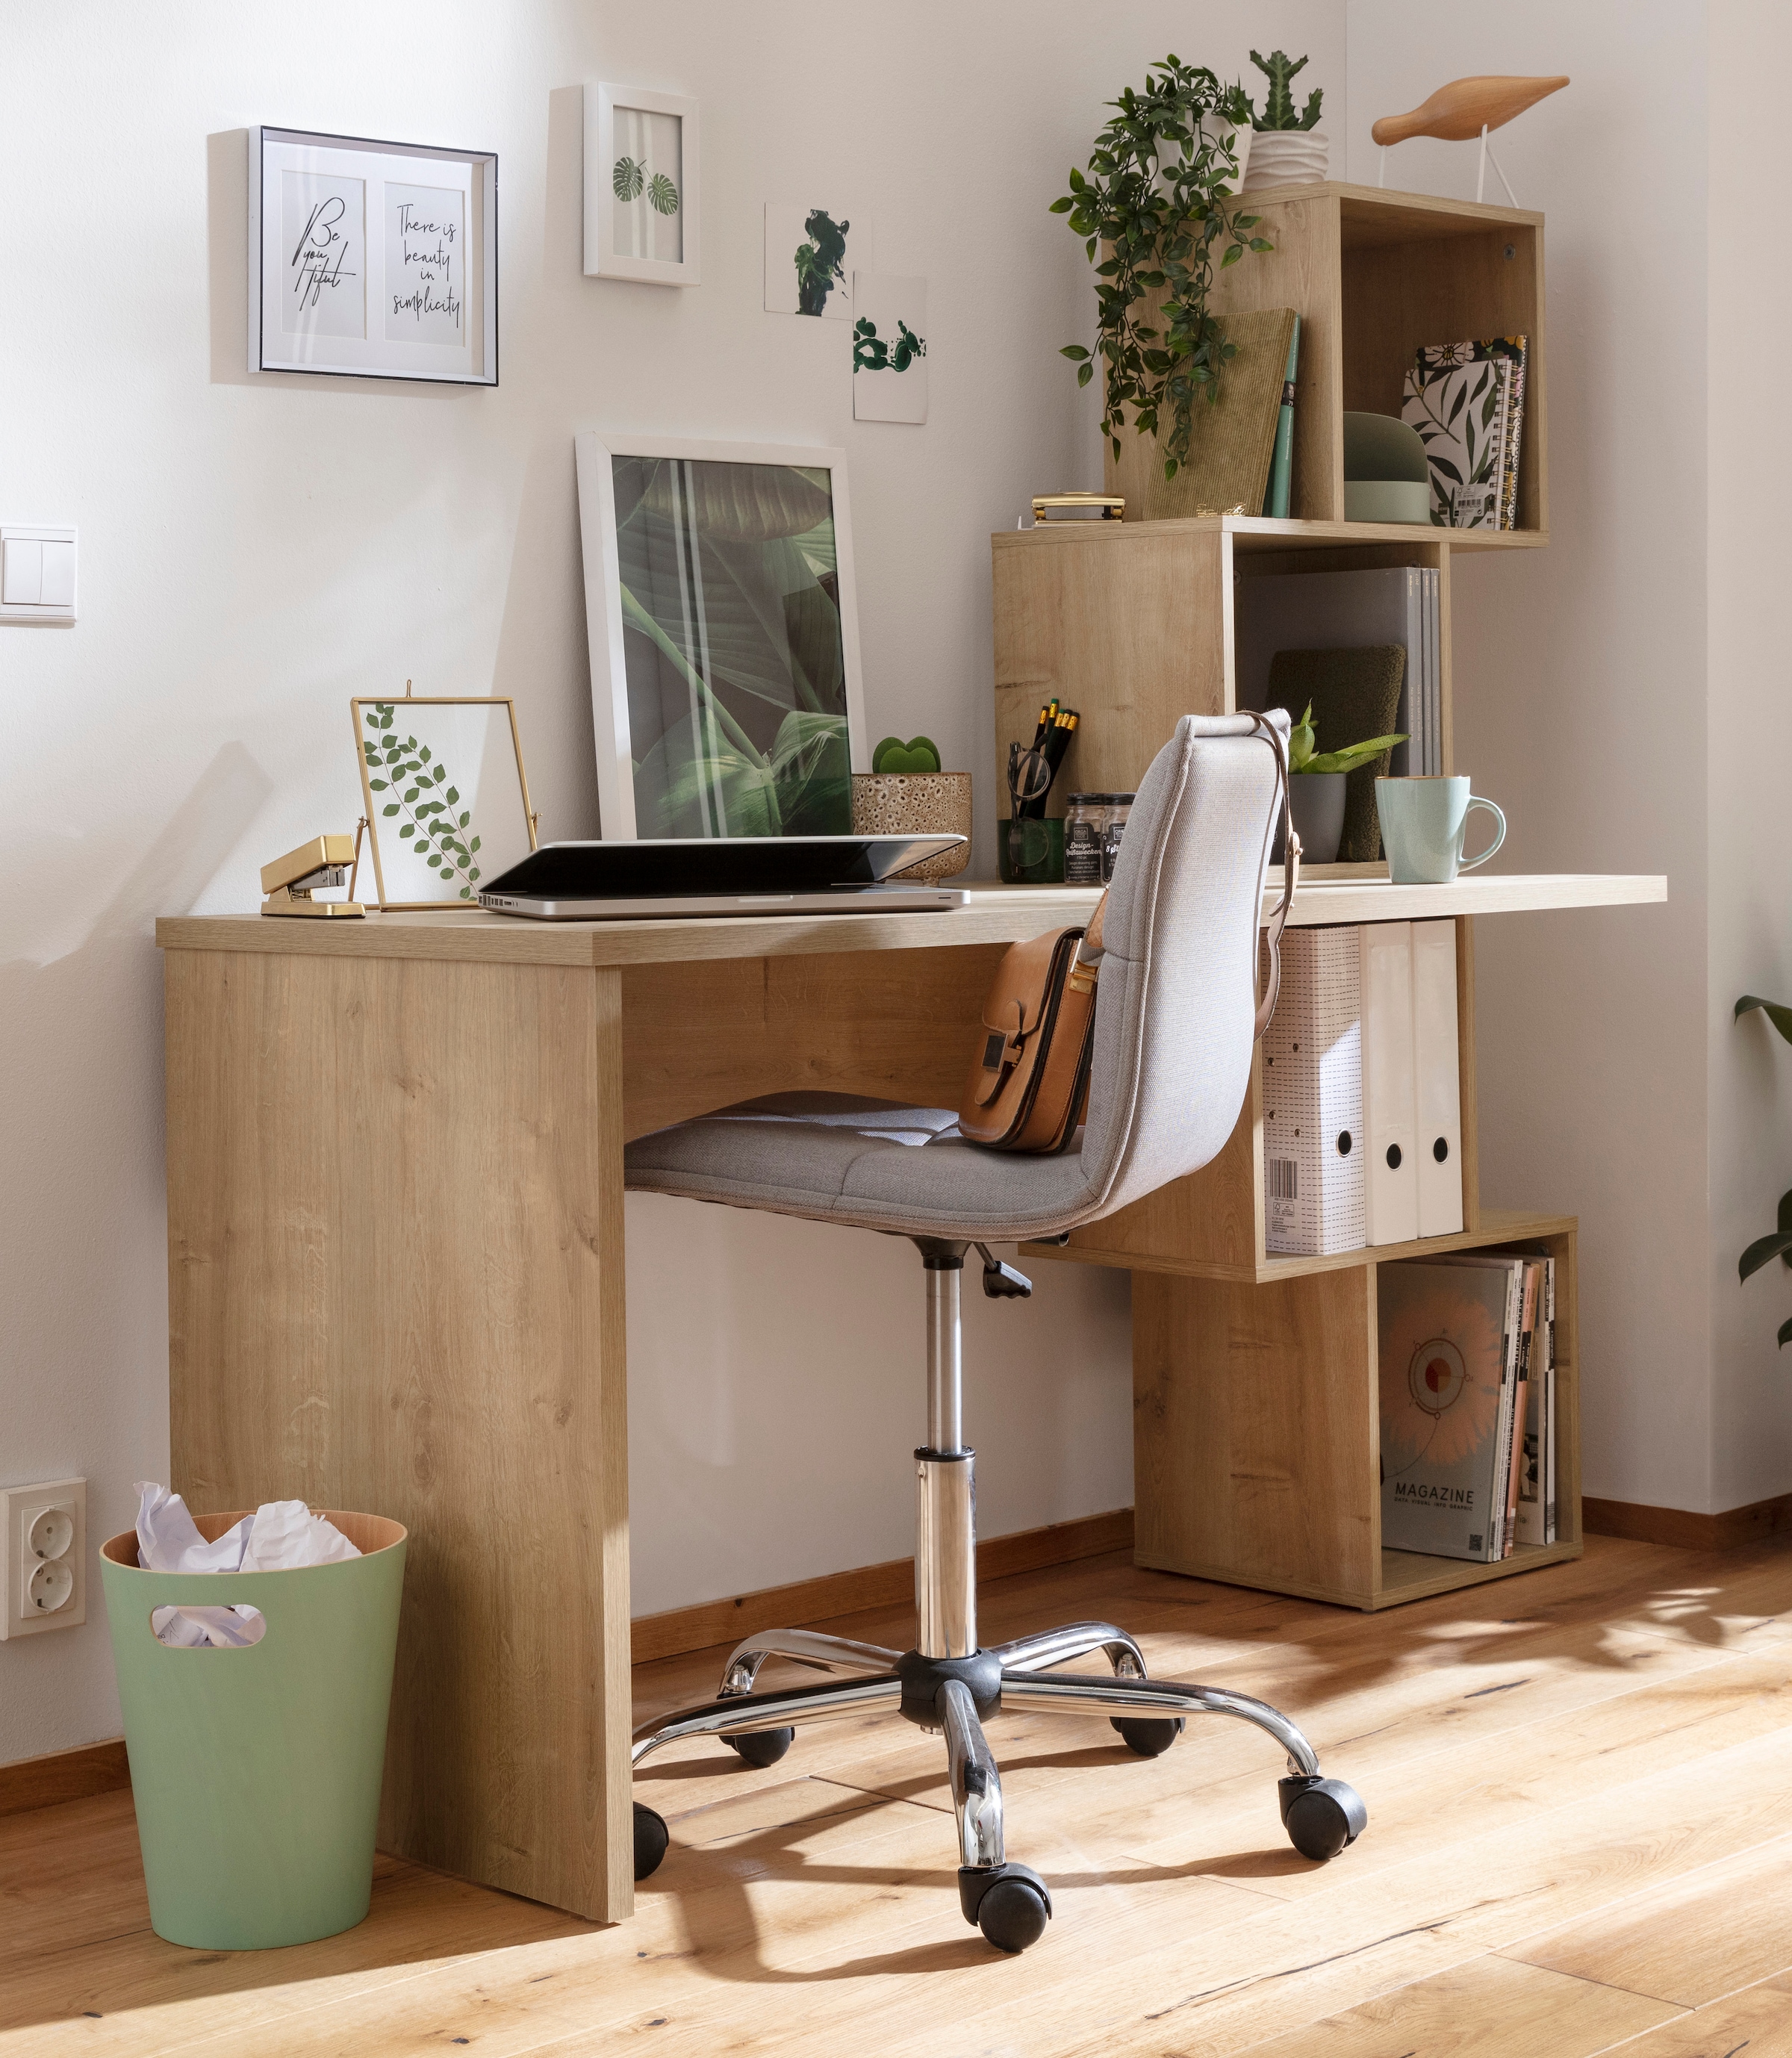 VOGL Möbelfabrik Schreibtisch »Reggi«, mit 4 offenen Fächern kaufen bei OTTO